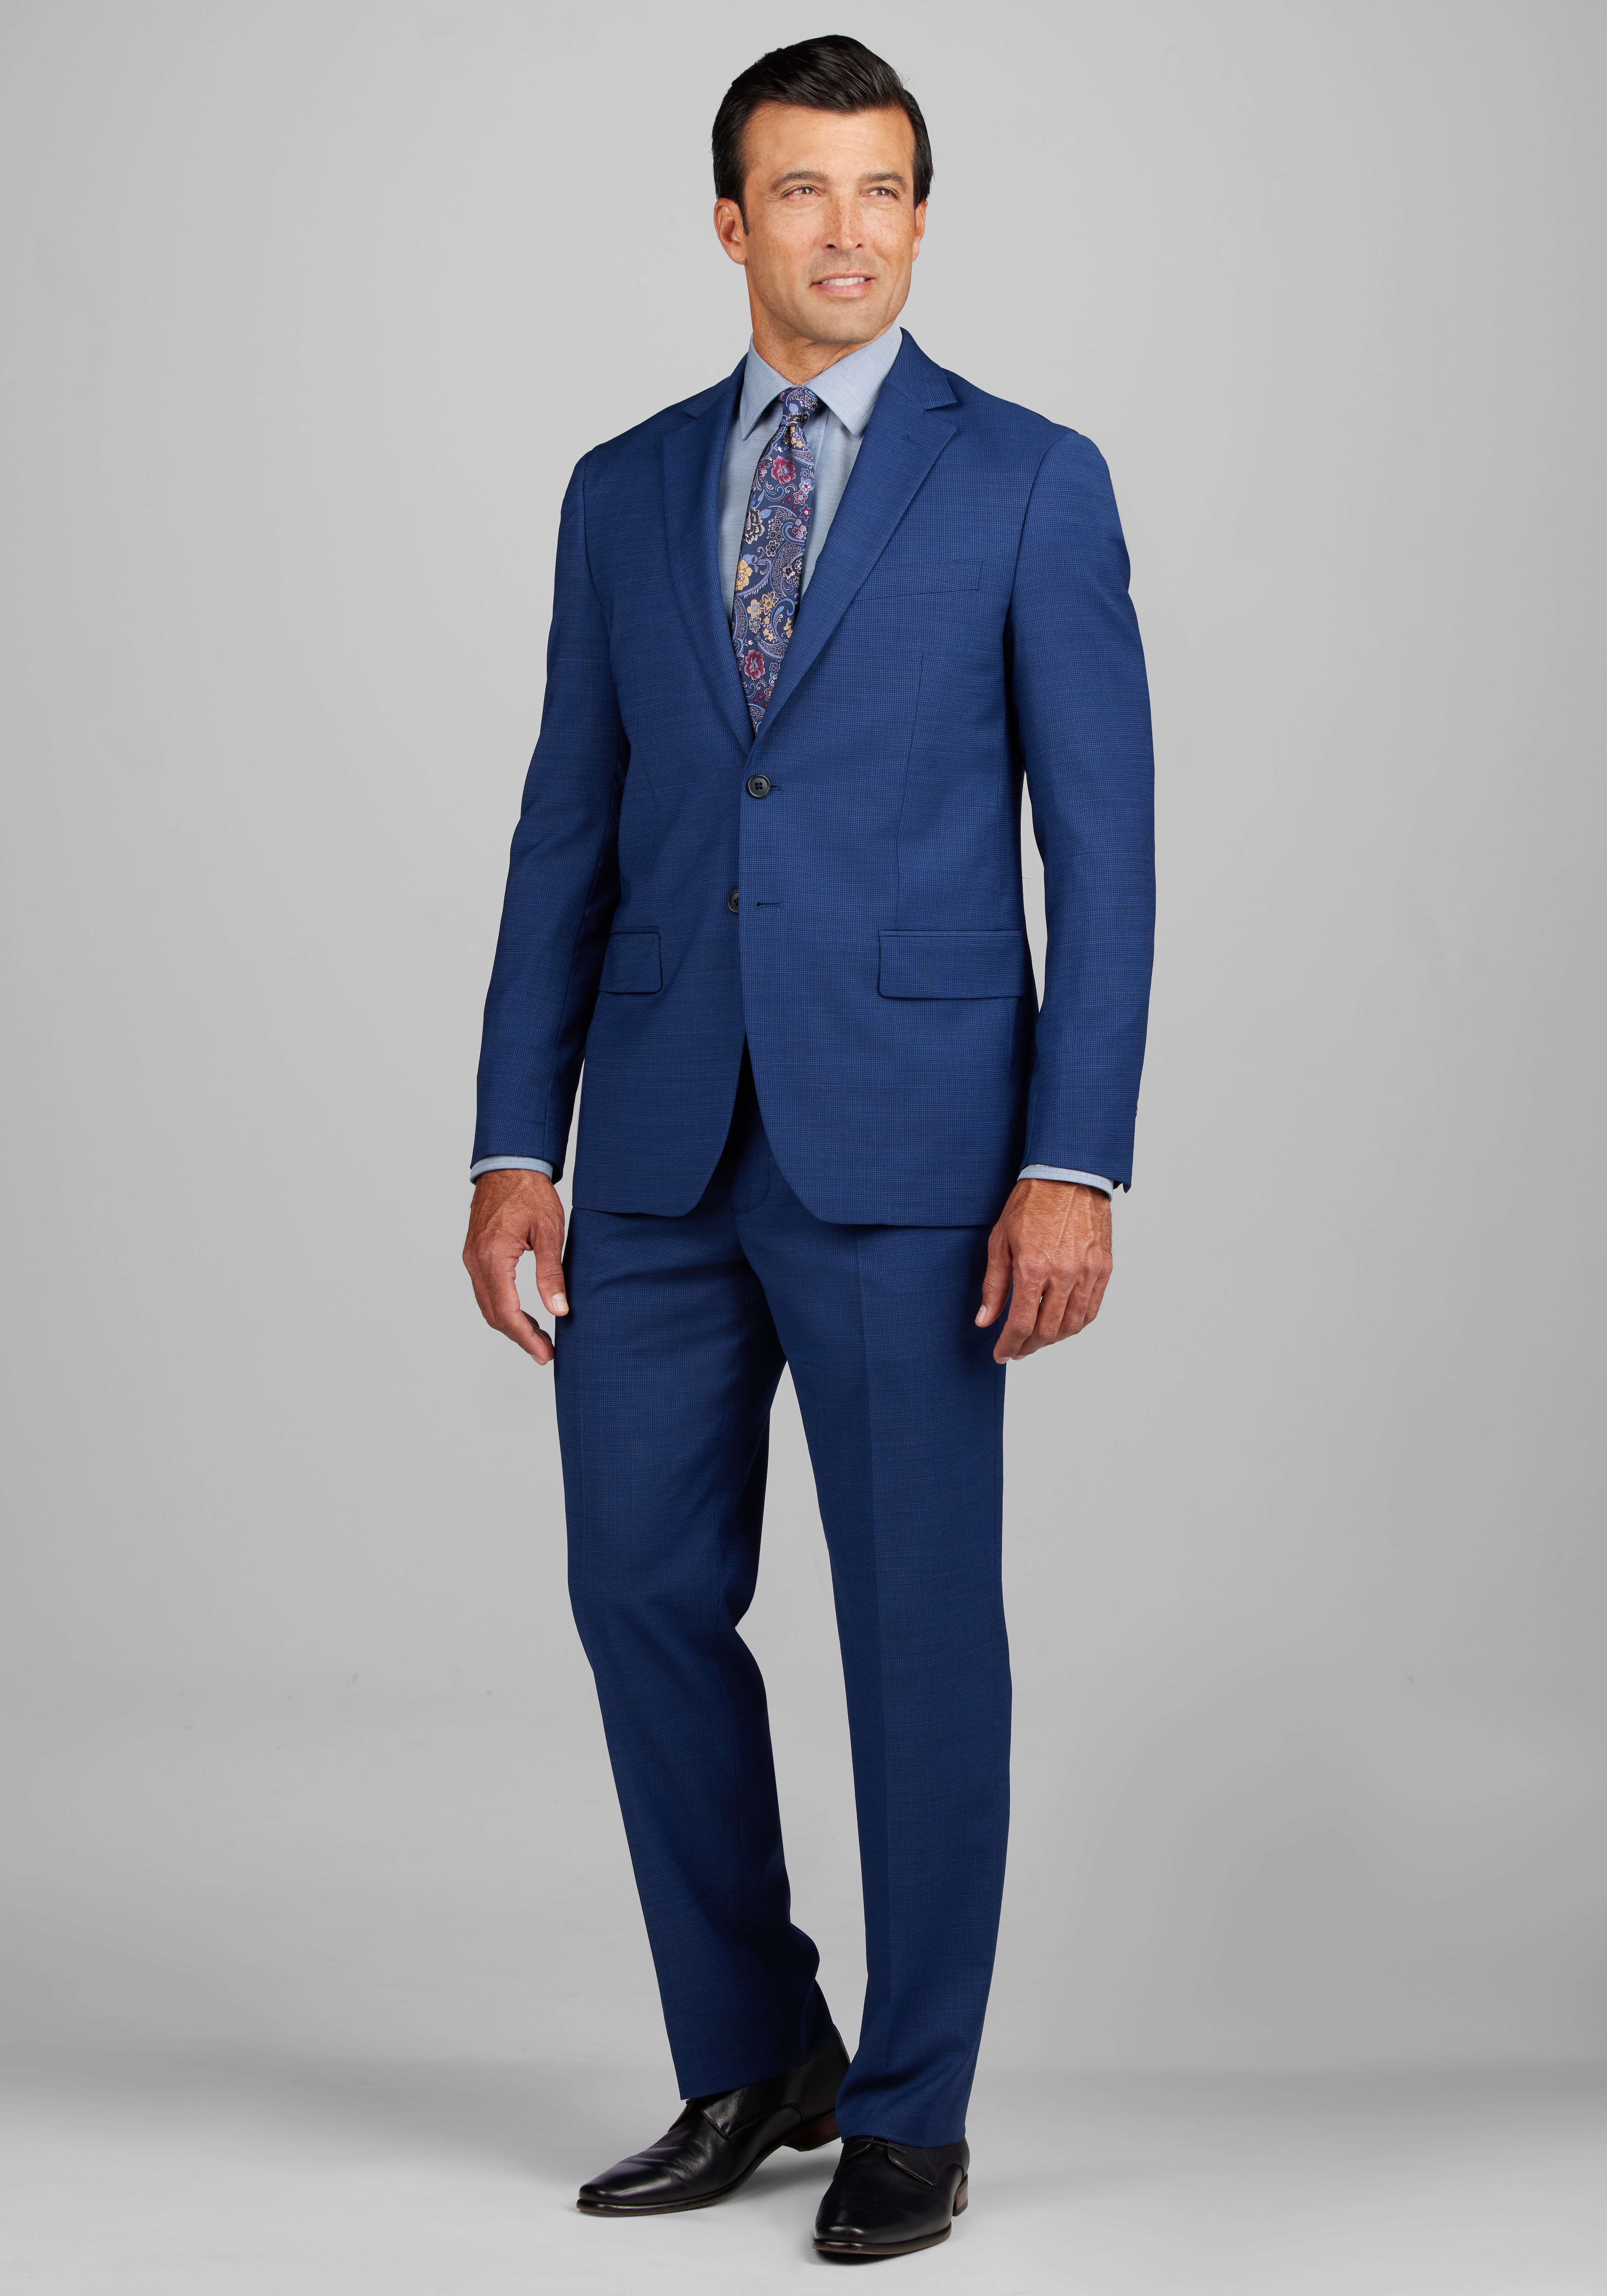 Men Suit Stylish Navy Blue Suit 3 Piece Suit Business Suit for Men